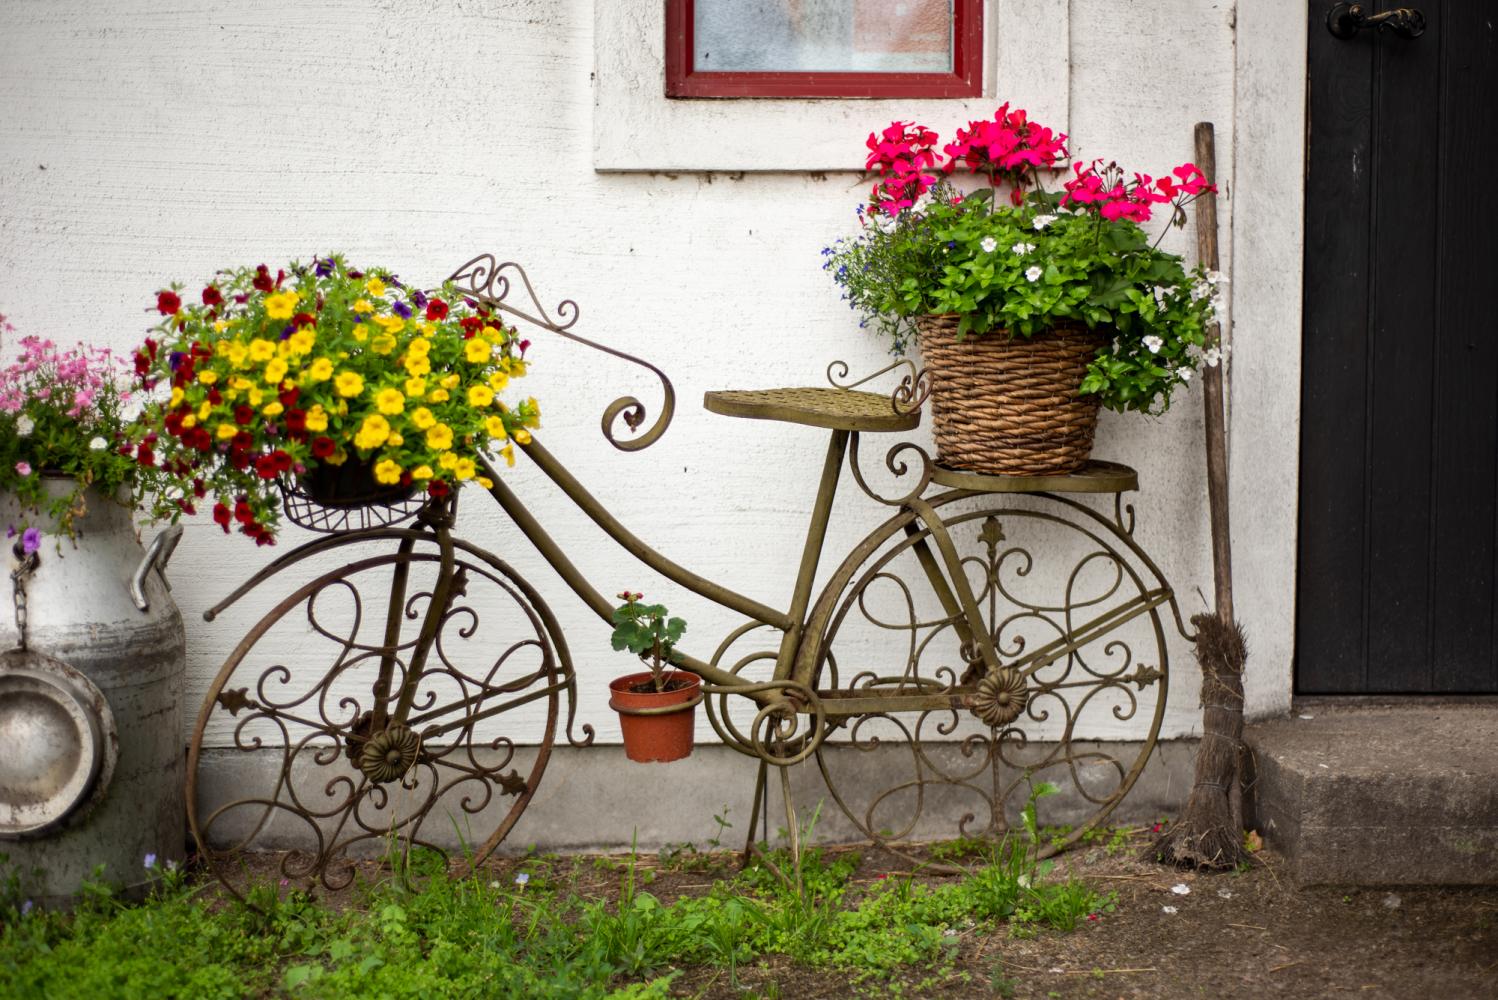 Smidescykel med blomkrukor